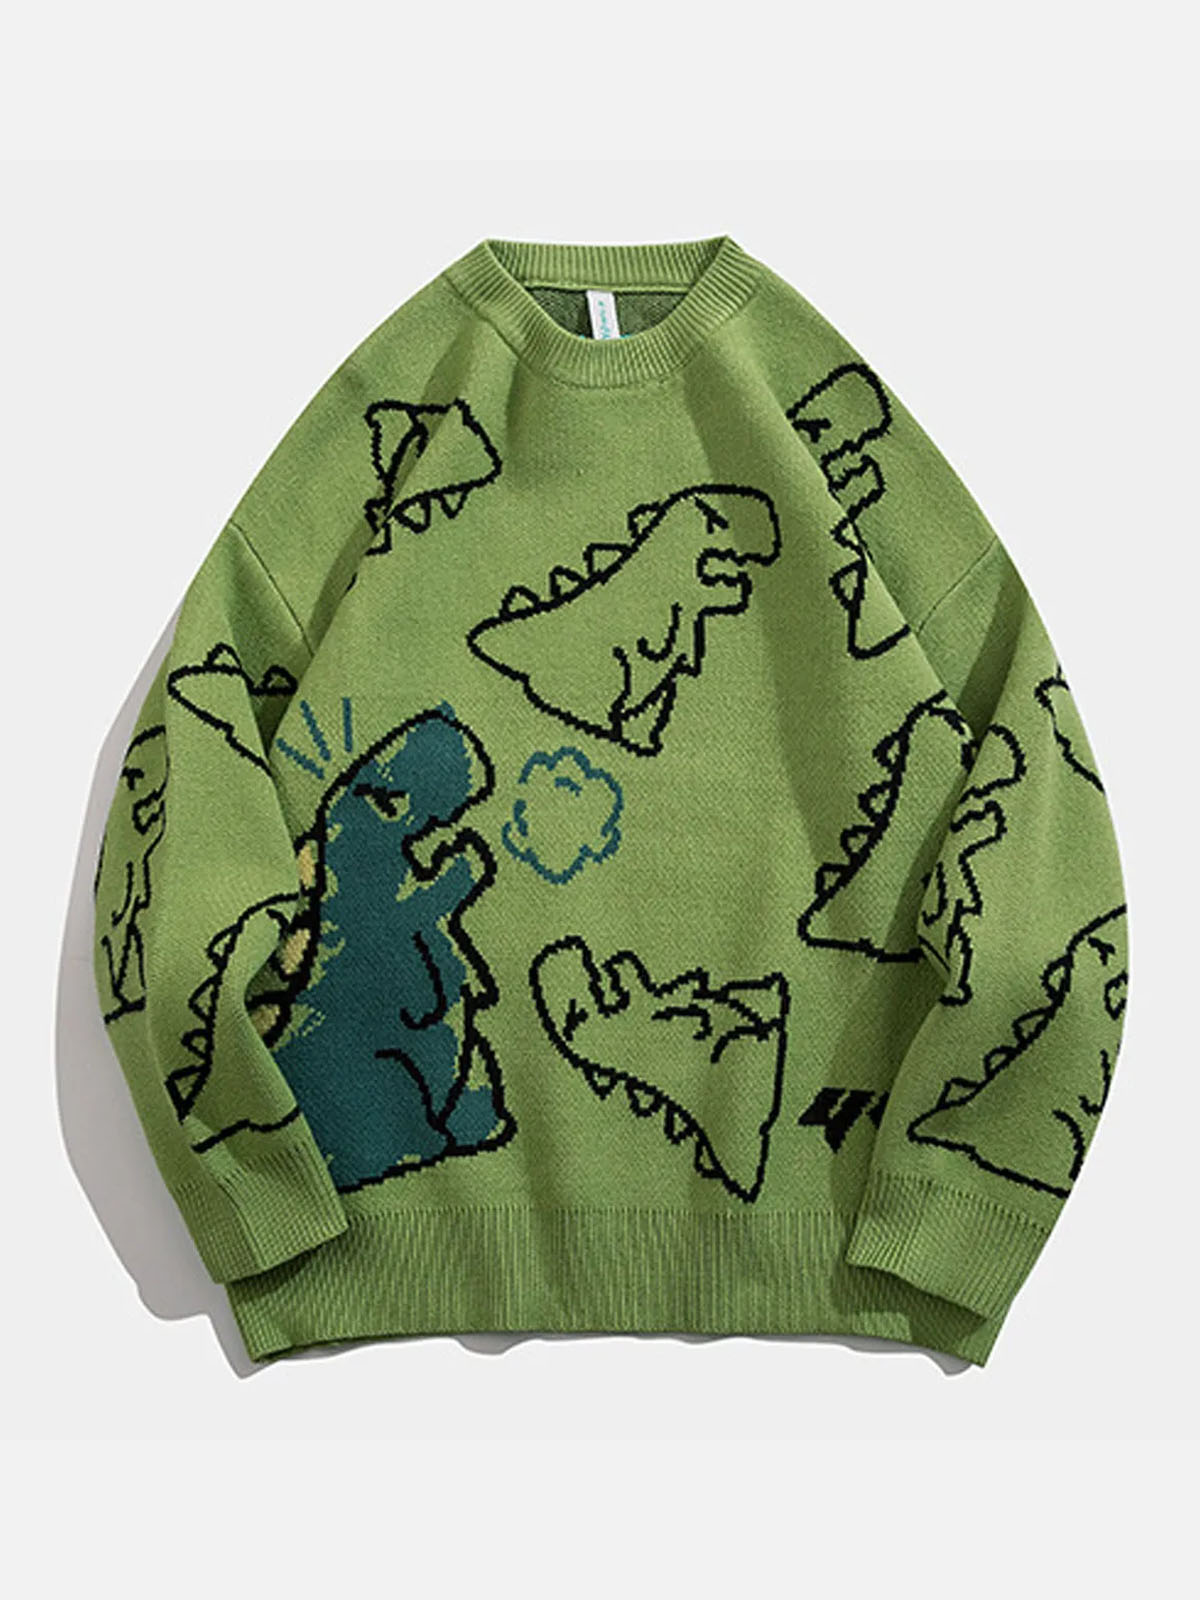 The Cartoon Dinosaur Printed Sweater